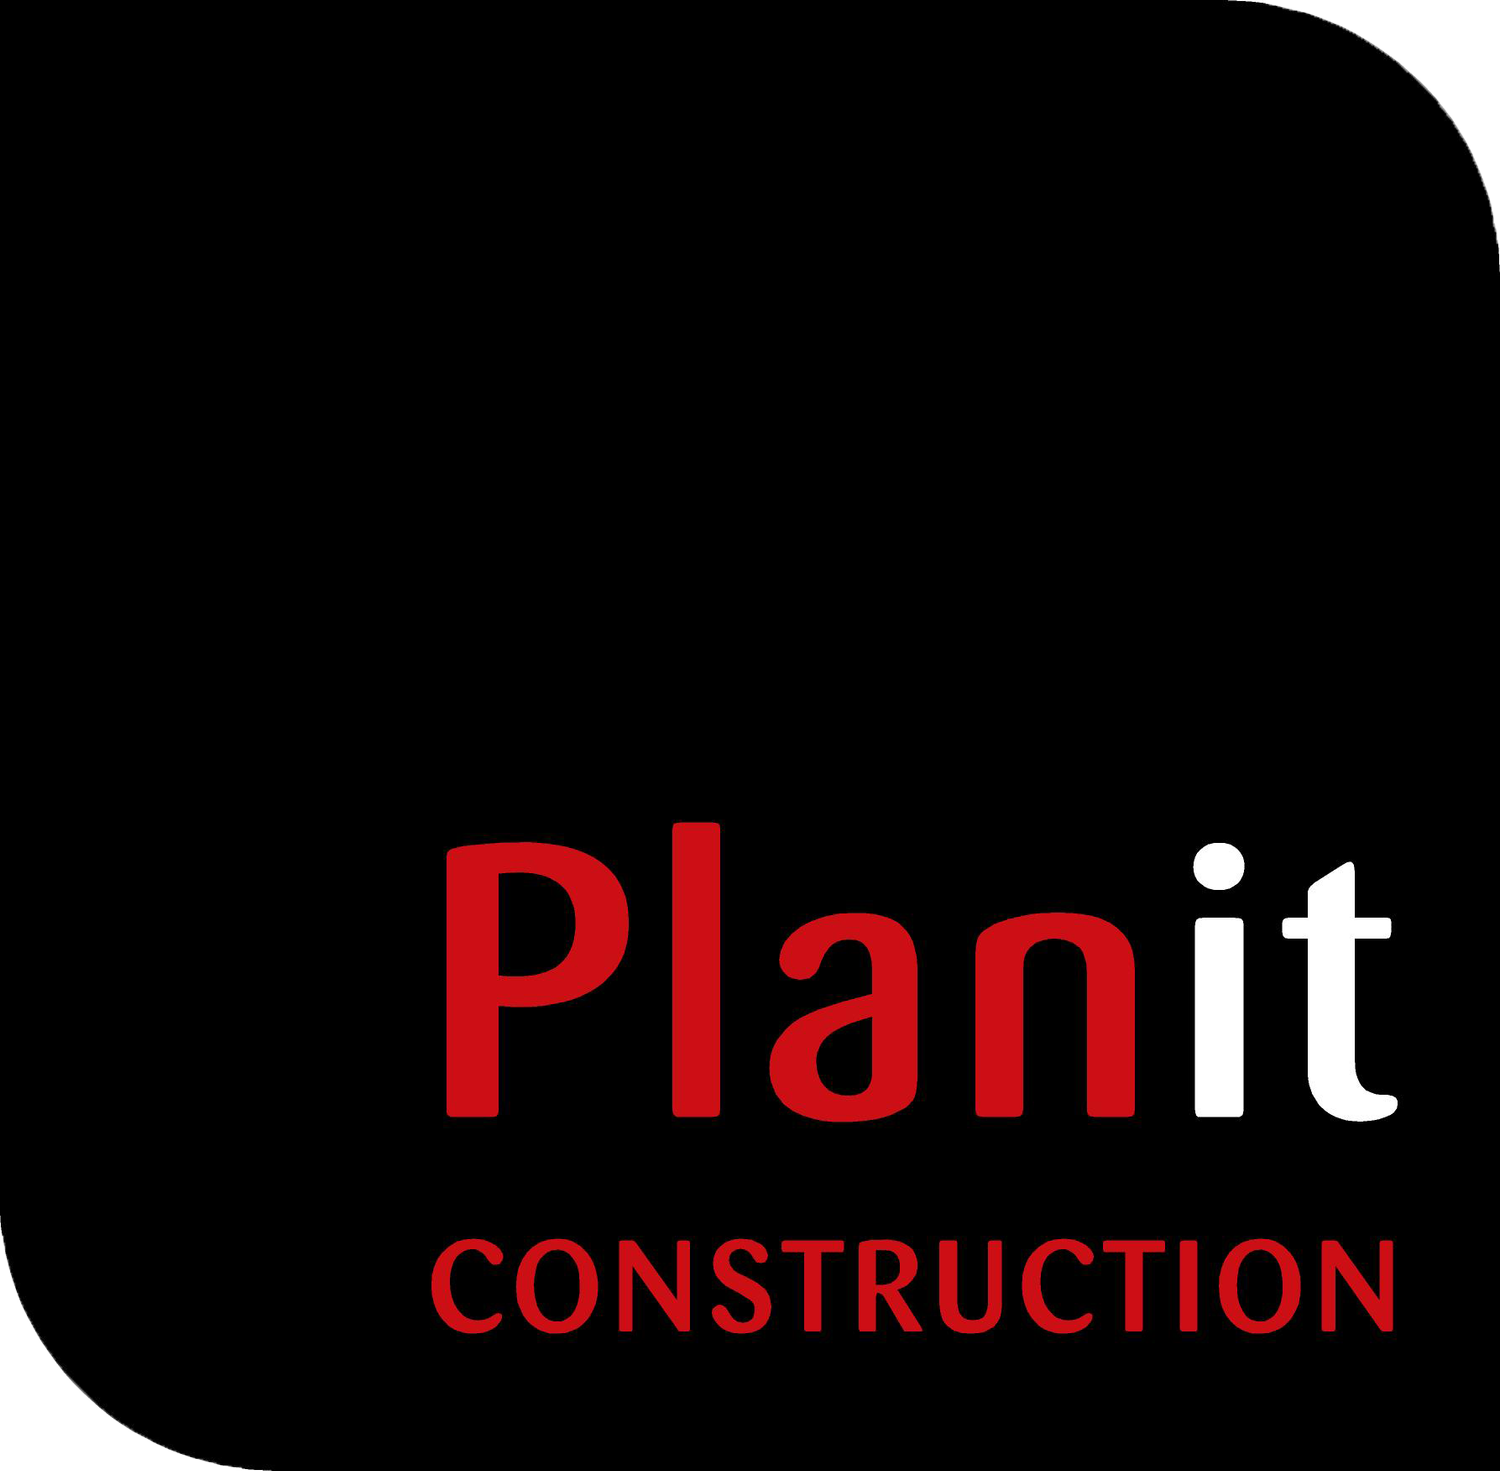 Planit Construction